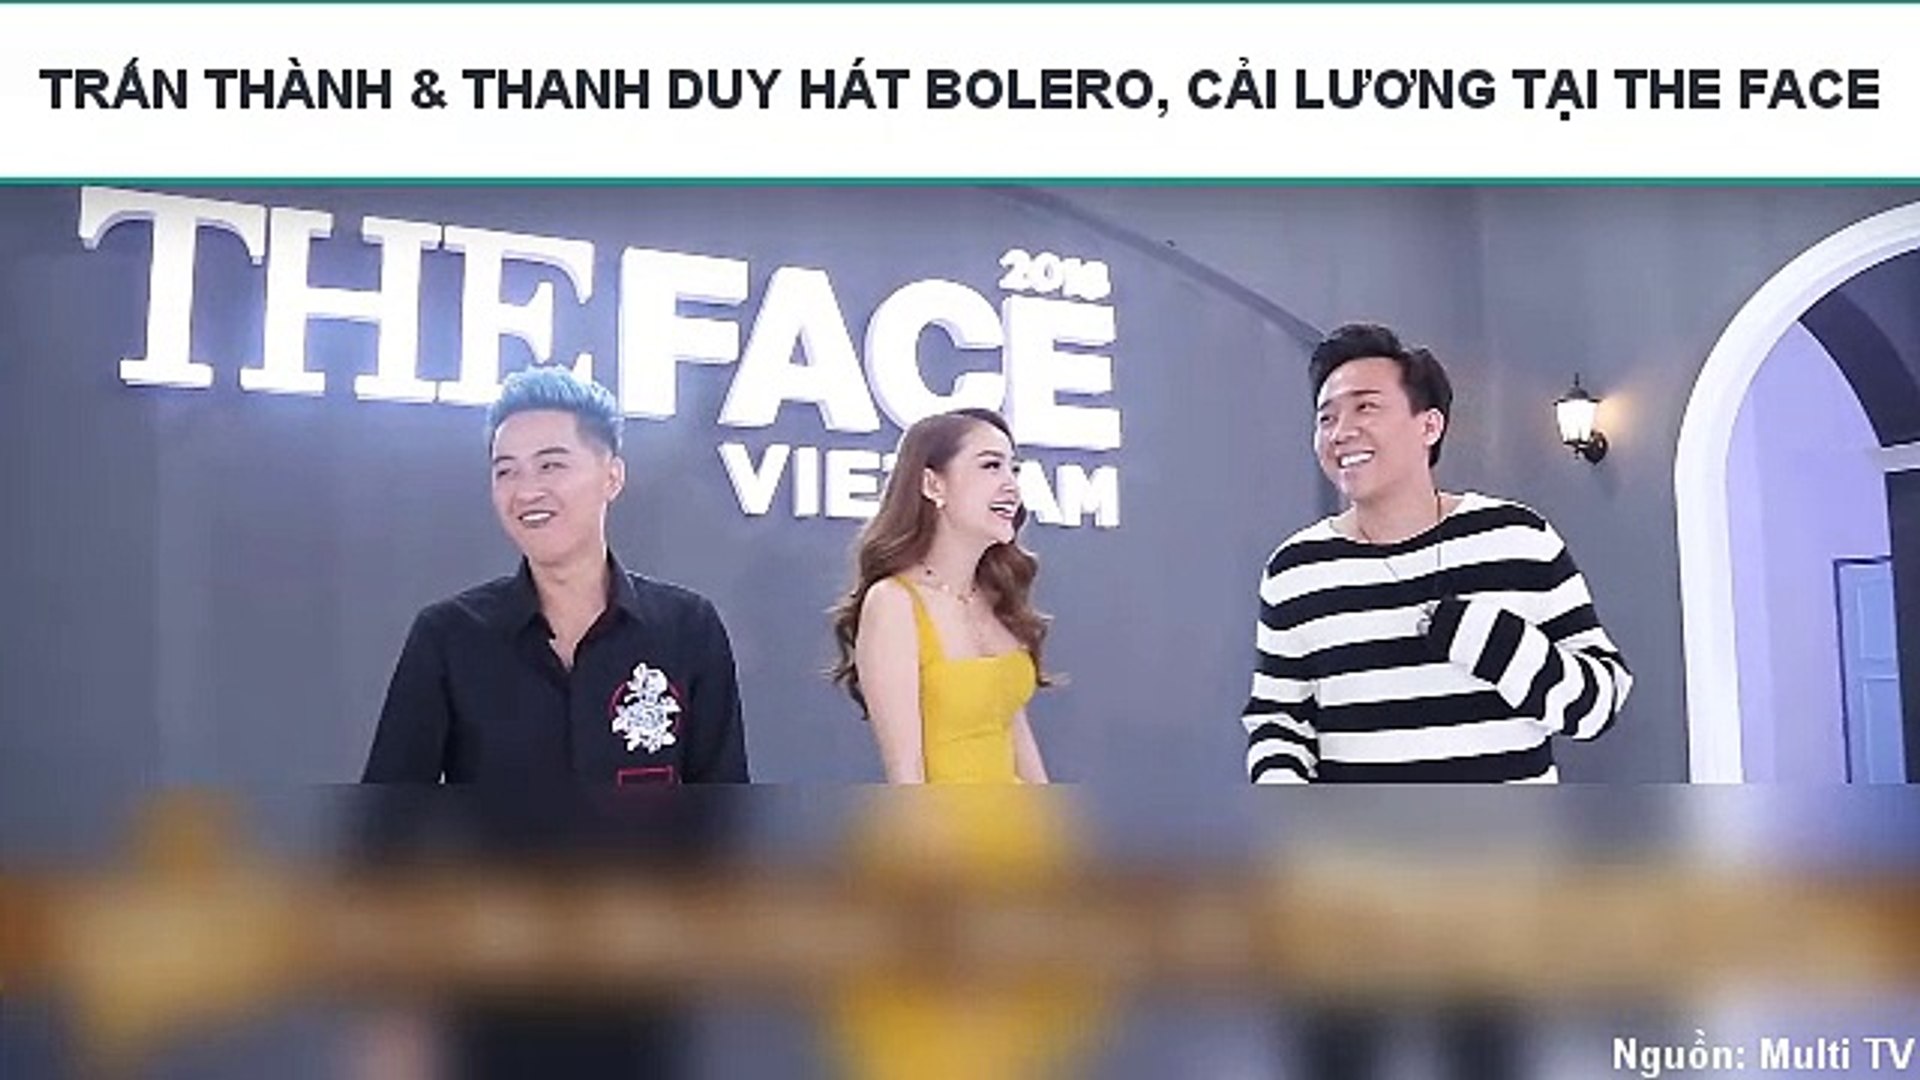 TRẤN THÀNH & THANH DUY HÁT BOLERO, CẢI LƯƠNG TẠI THE FACE